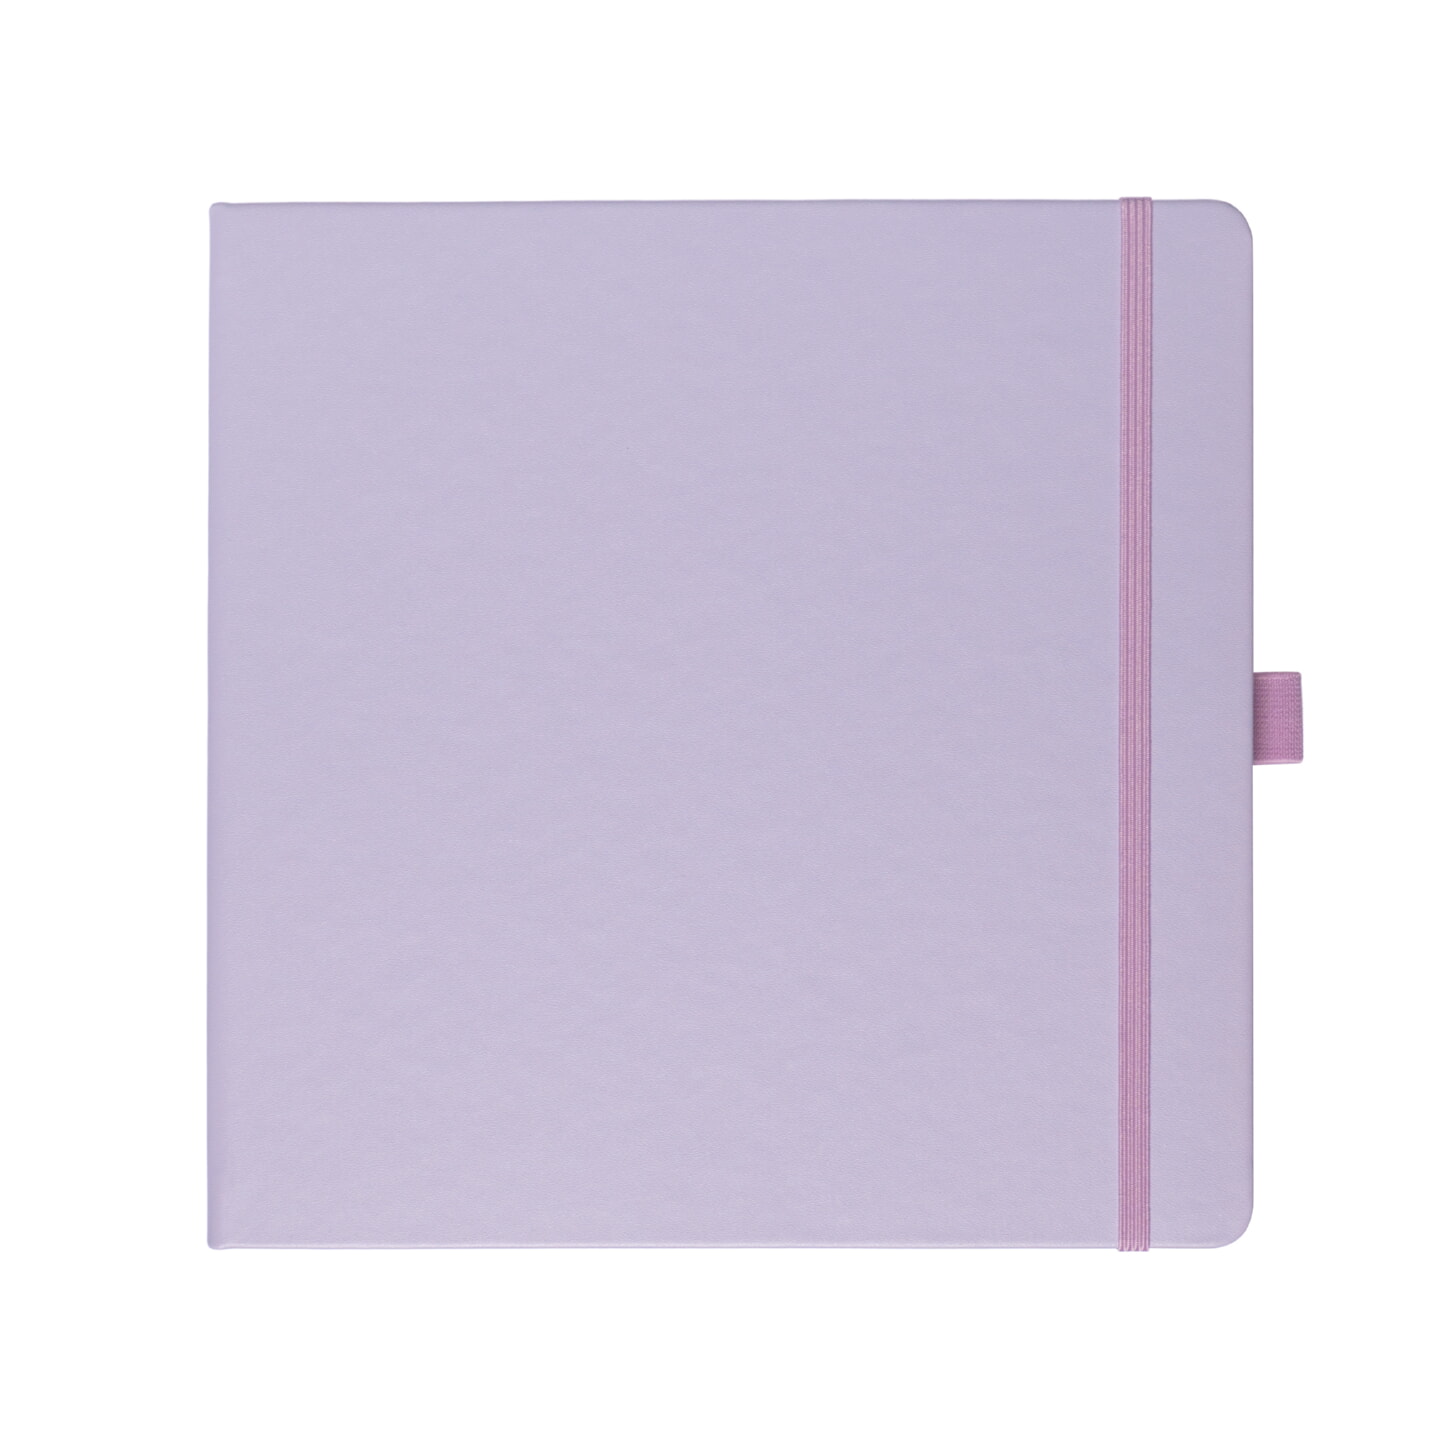 Блокнот для зарисовок Sketchmarker 140г/кв.м 20*20cм 80л твердая обложка Фиолетовый пастельный